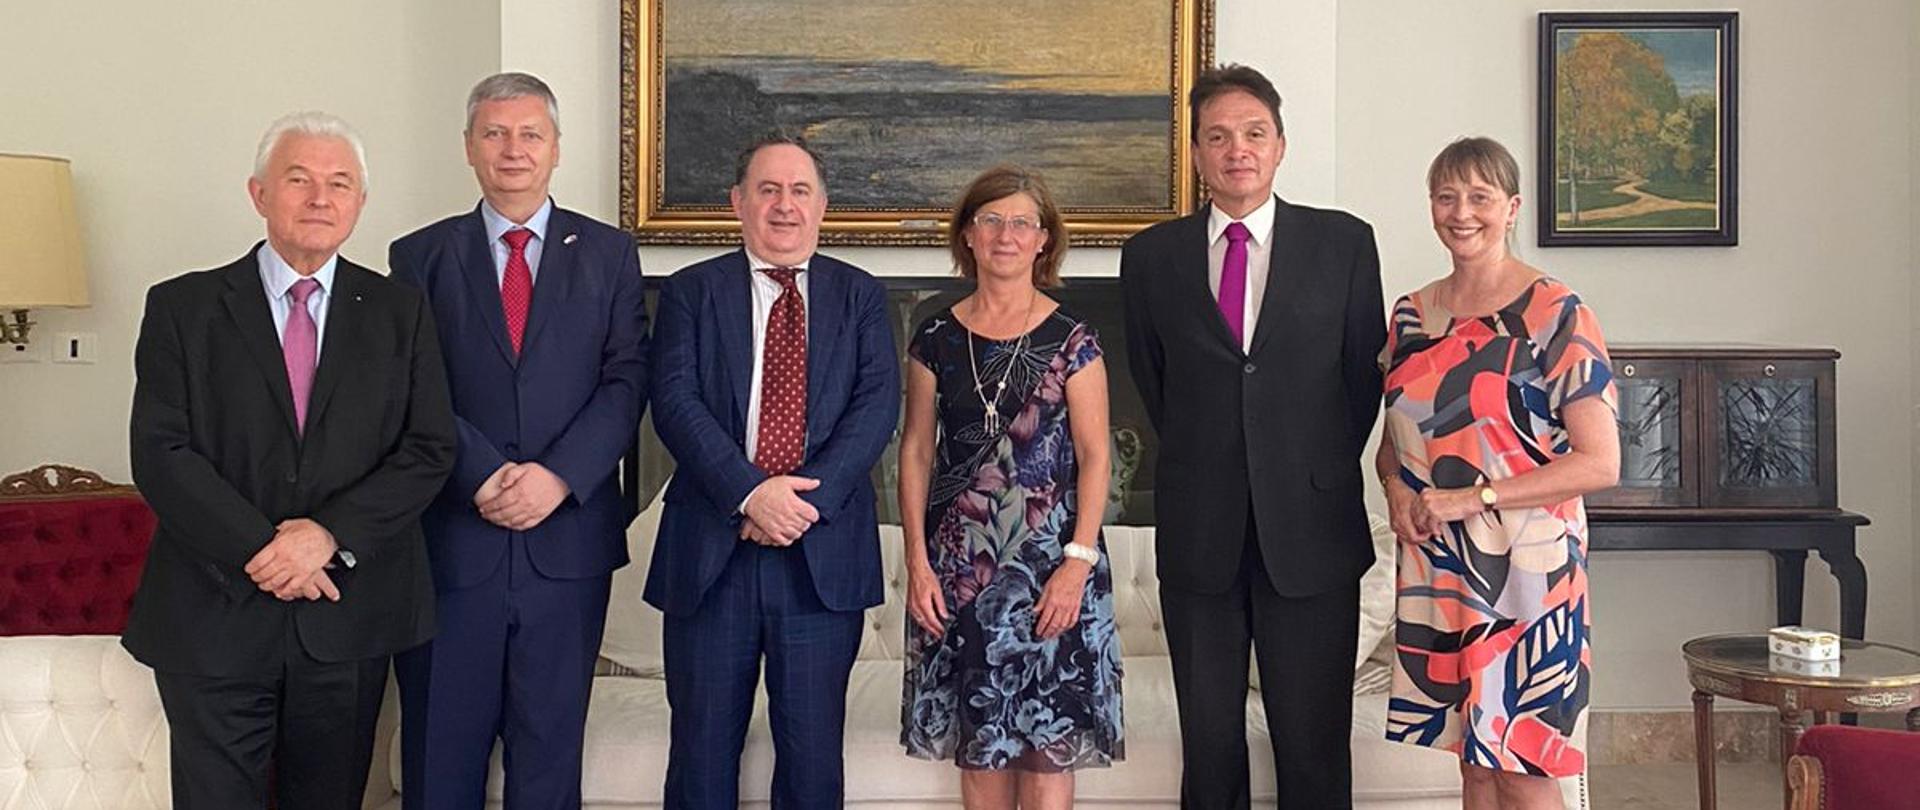 Wojna na Ukrainie i porozumienie Unii Europejskiej z Mercosur zdominowały spotkanie przedstawicieli państw grupy V4 i argentyńskiego MSZ.